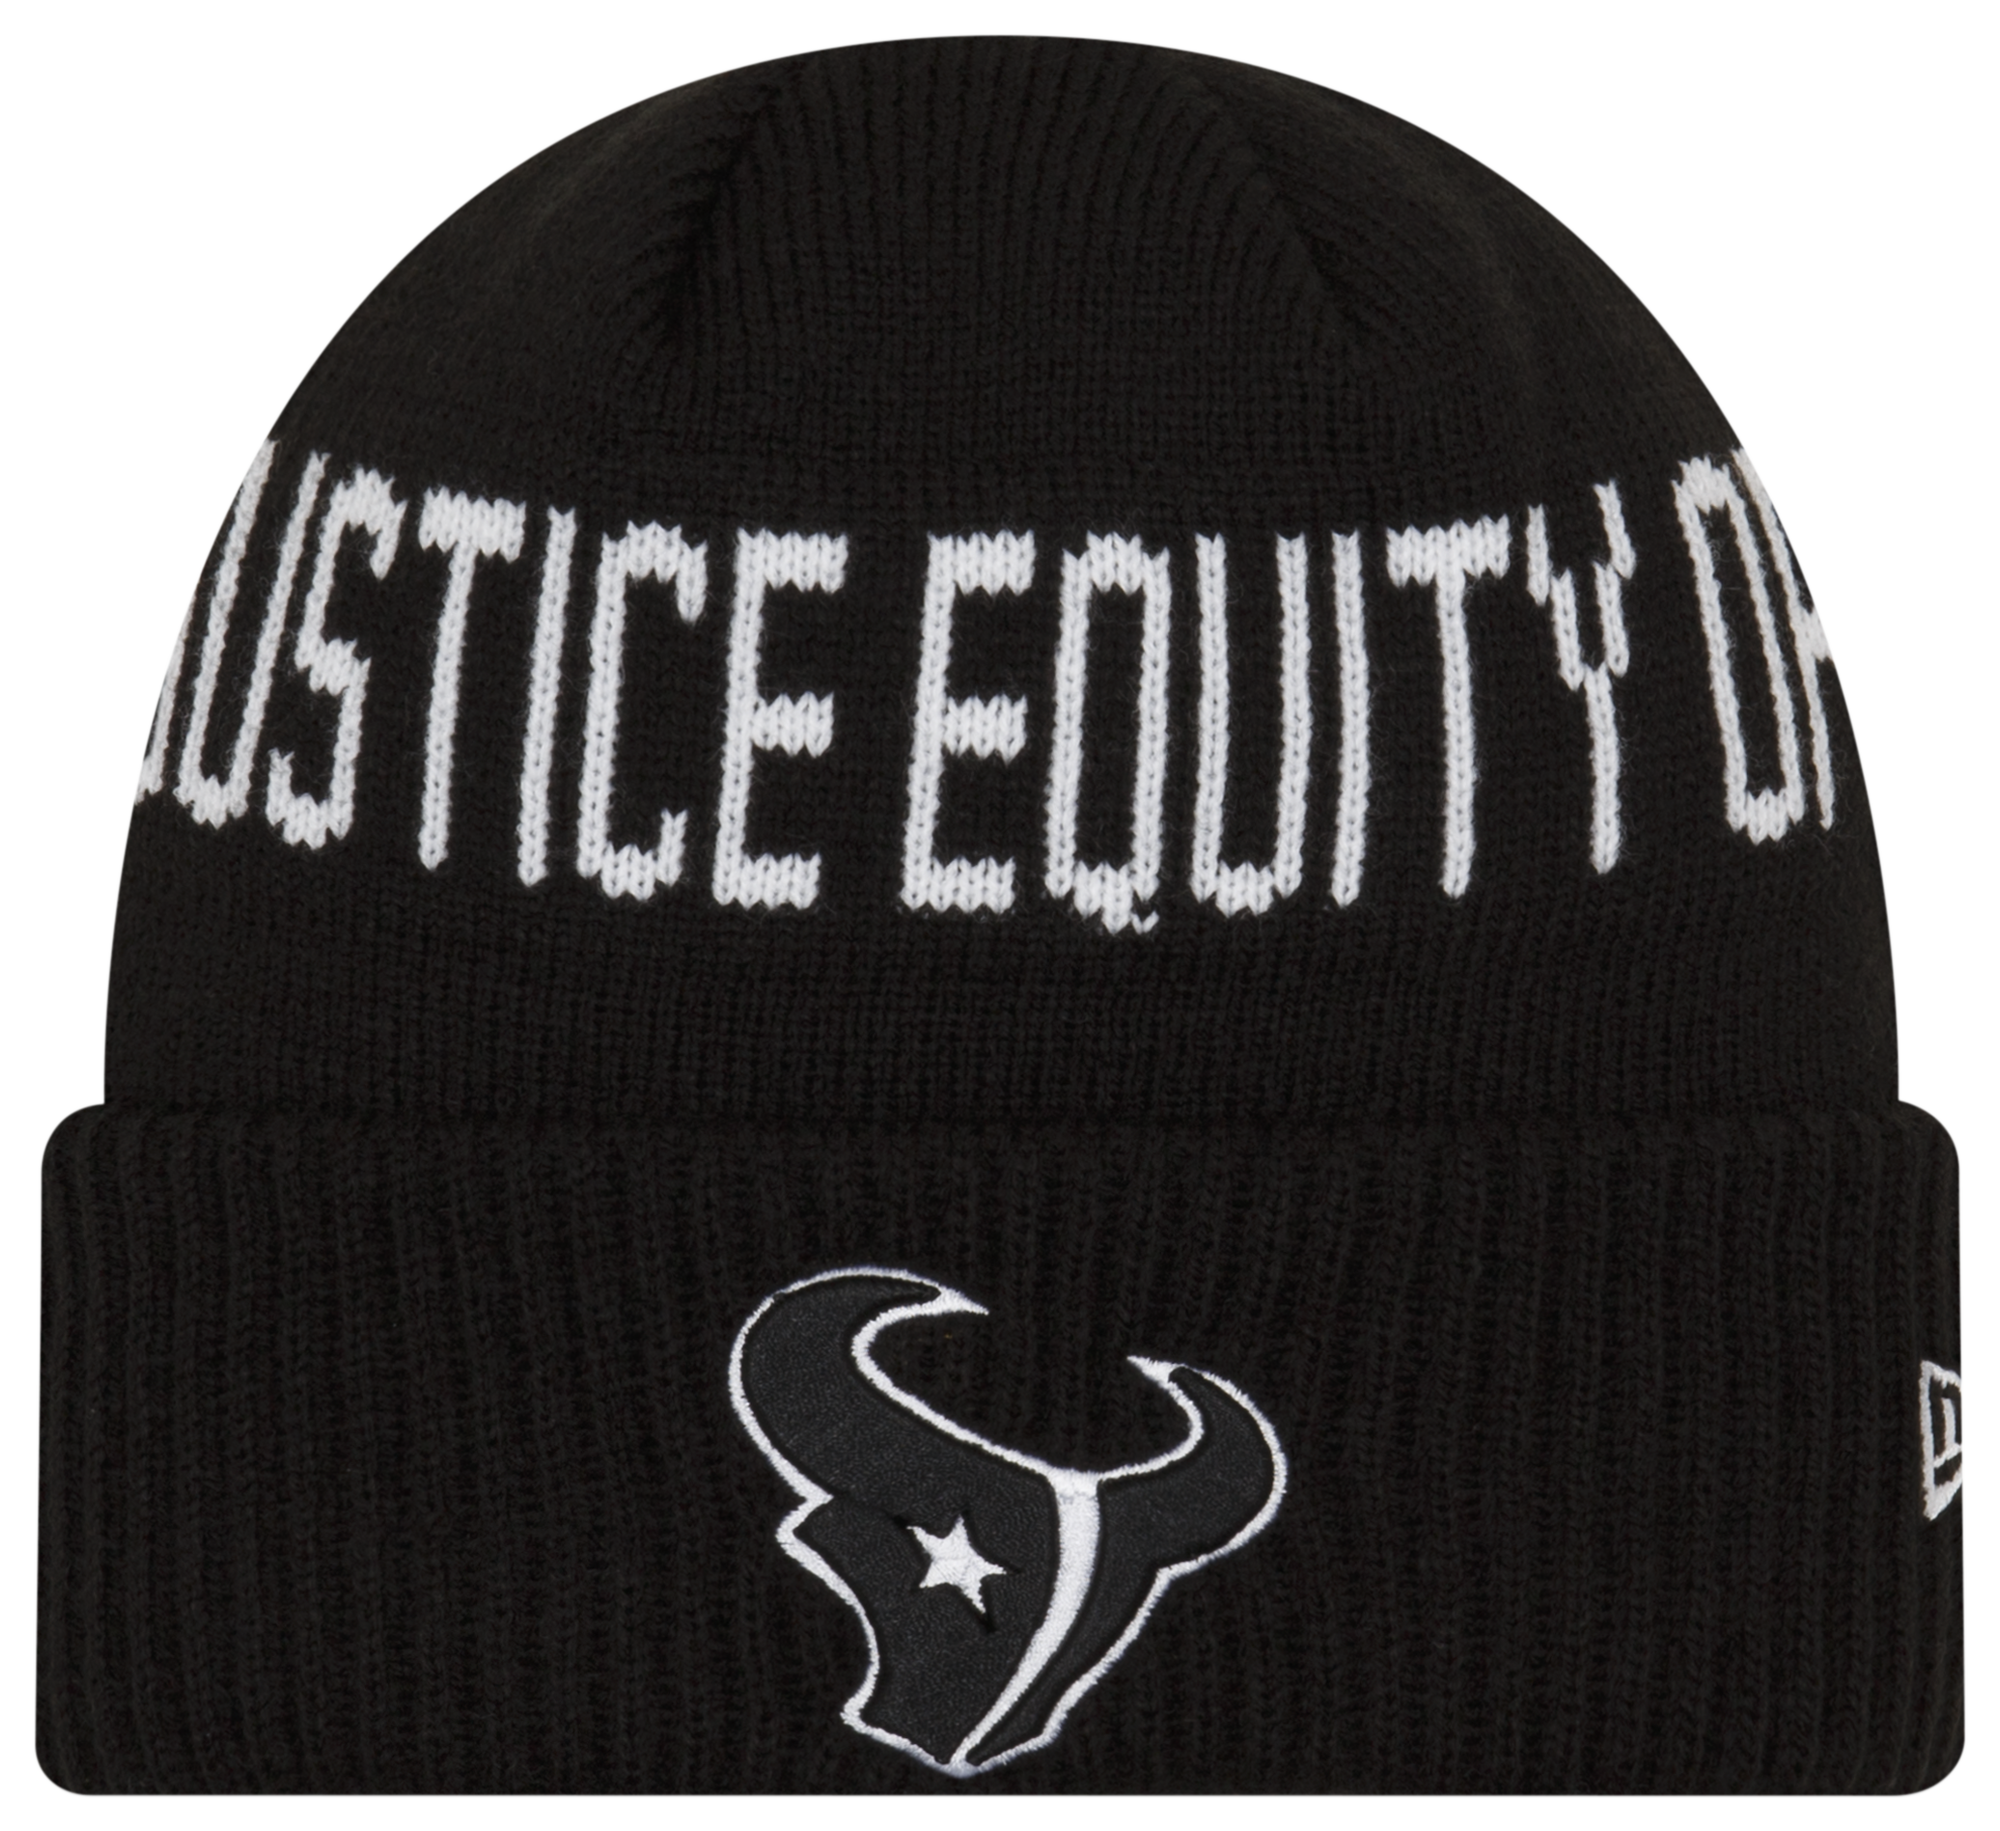 New Era Texans Social Justice Knit Cap